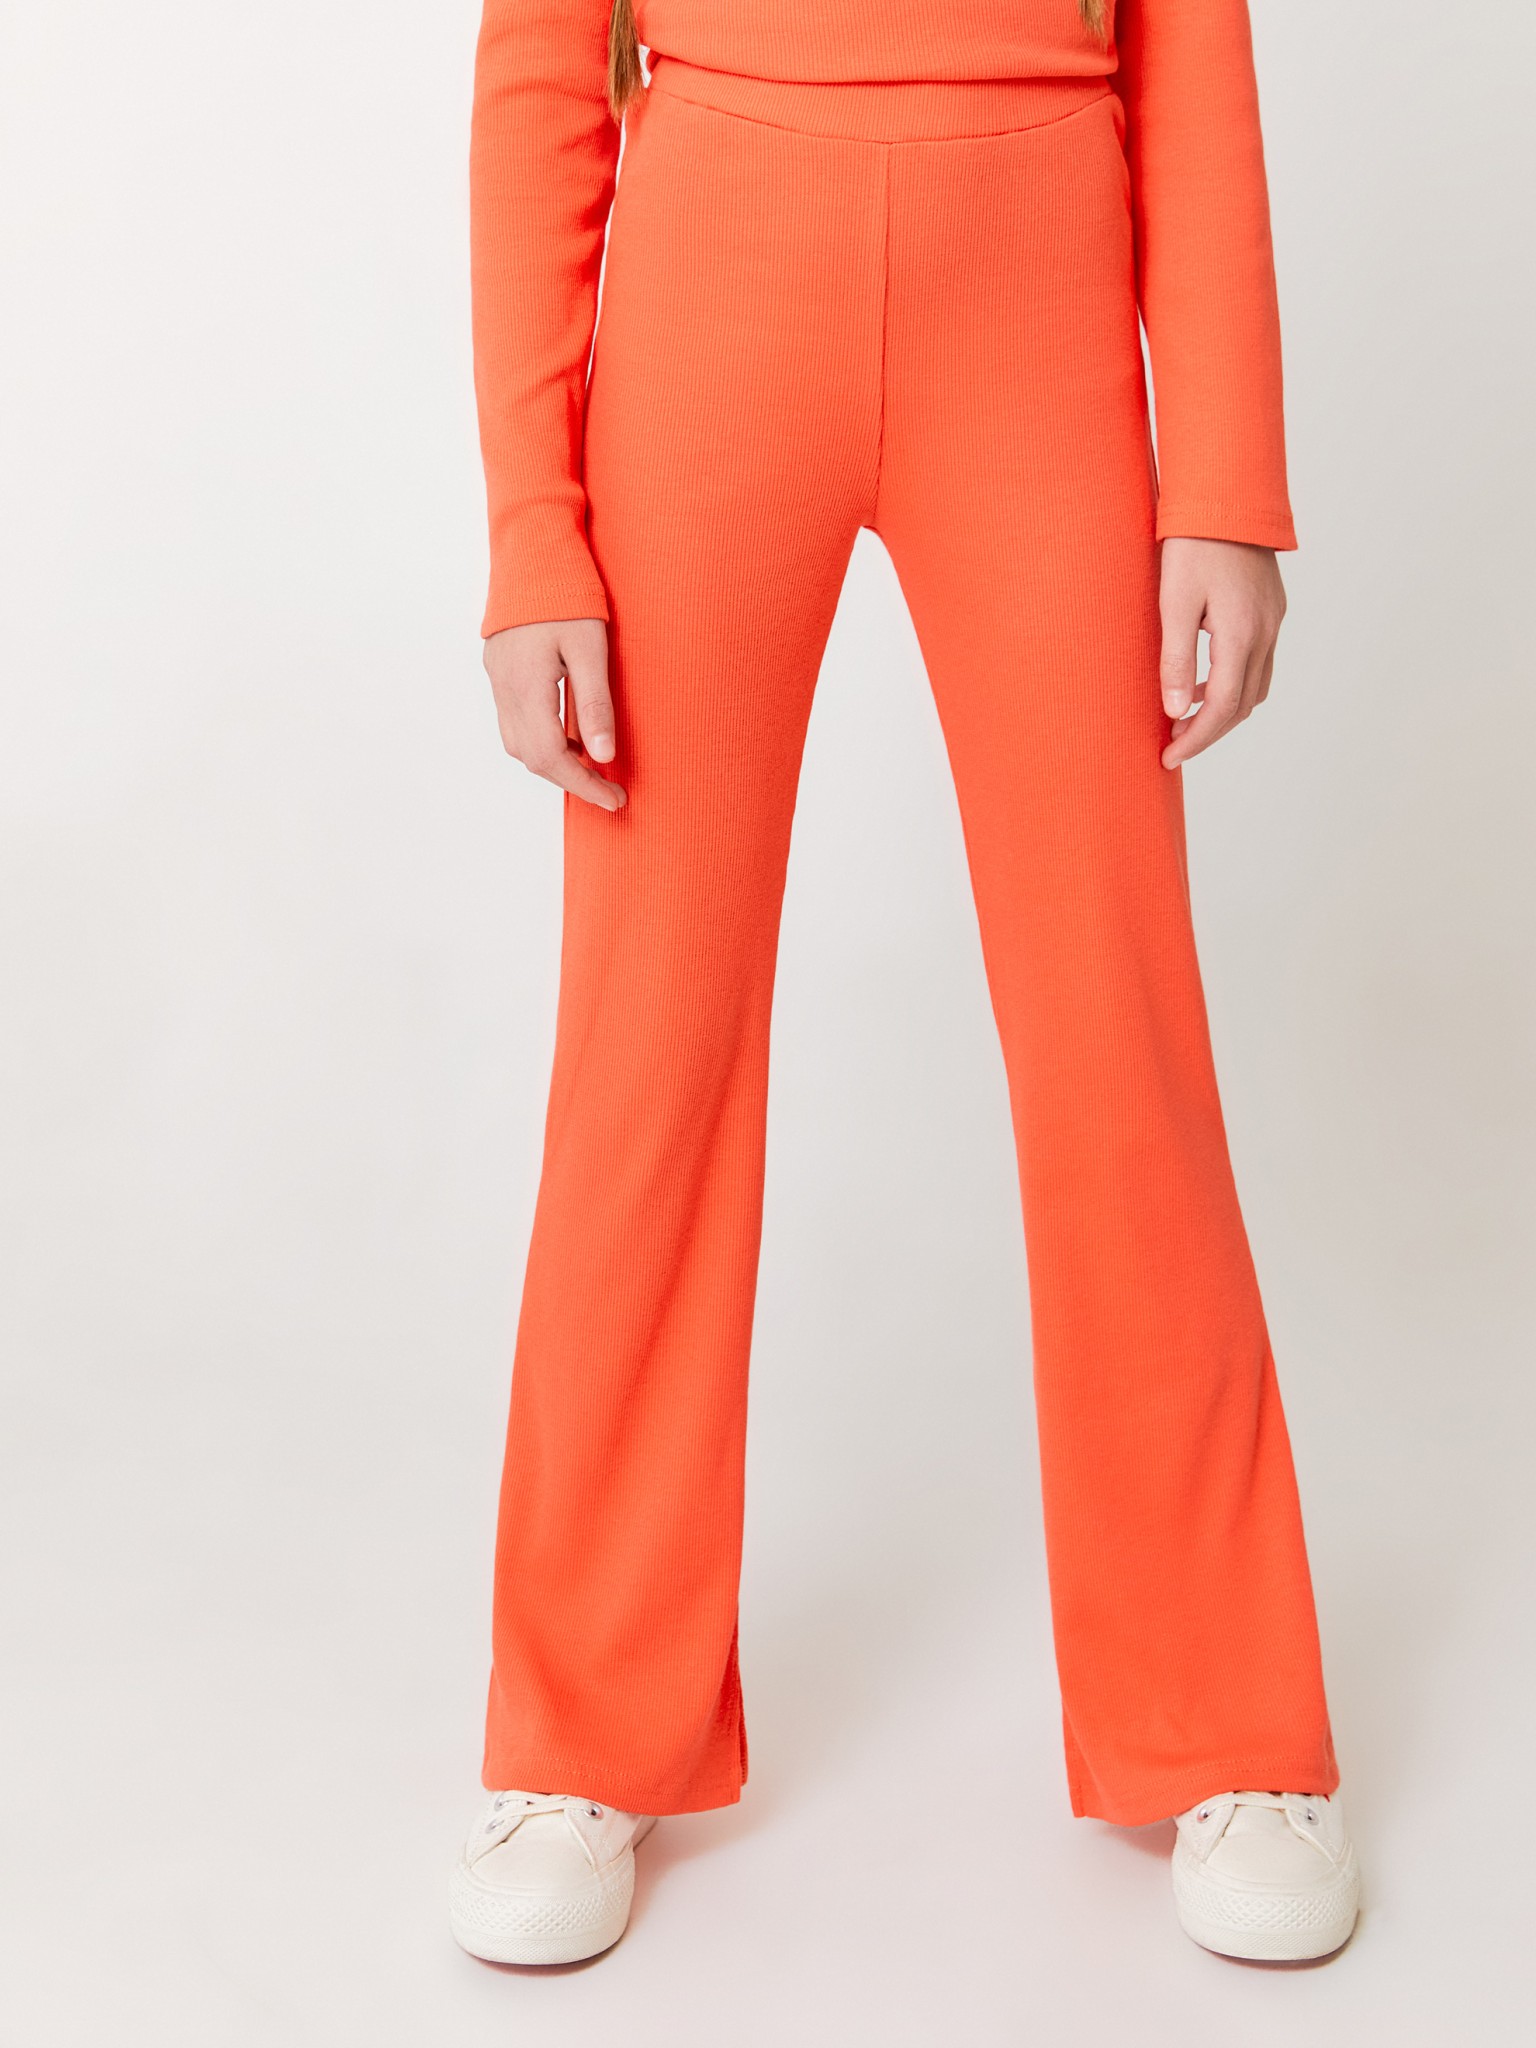 Брюки в рубчик ACOOLA 20200160011, оранжевый, 128 брюки утепленные мужские protest оранжевый